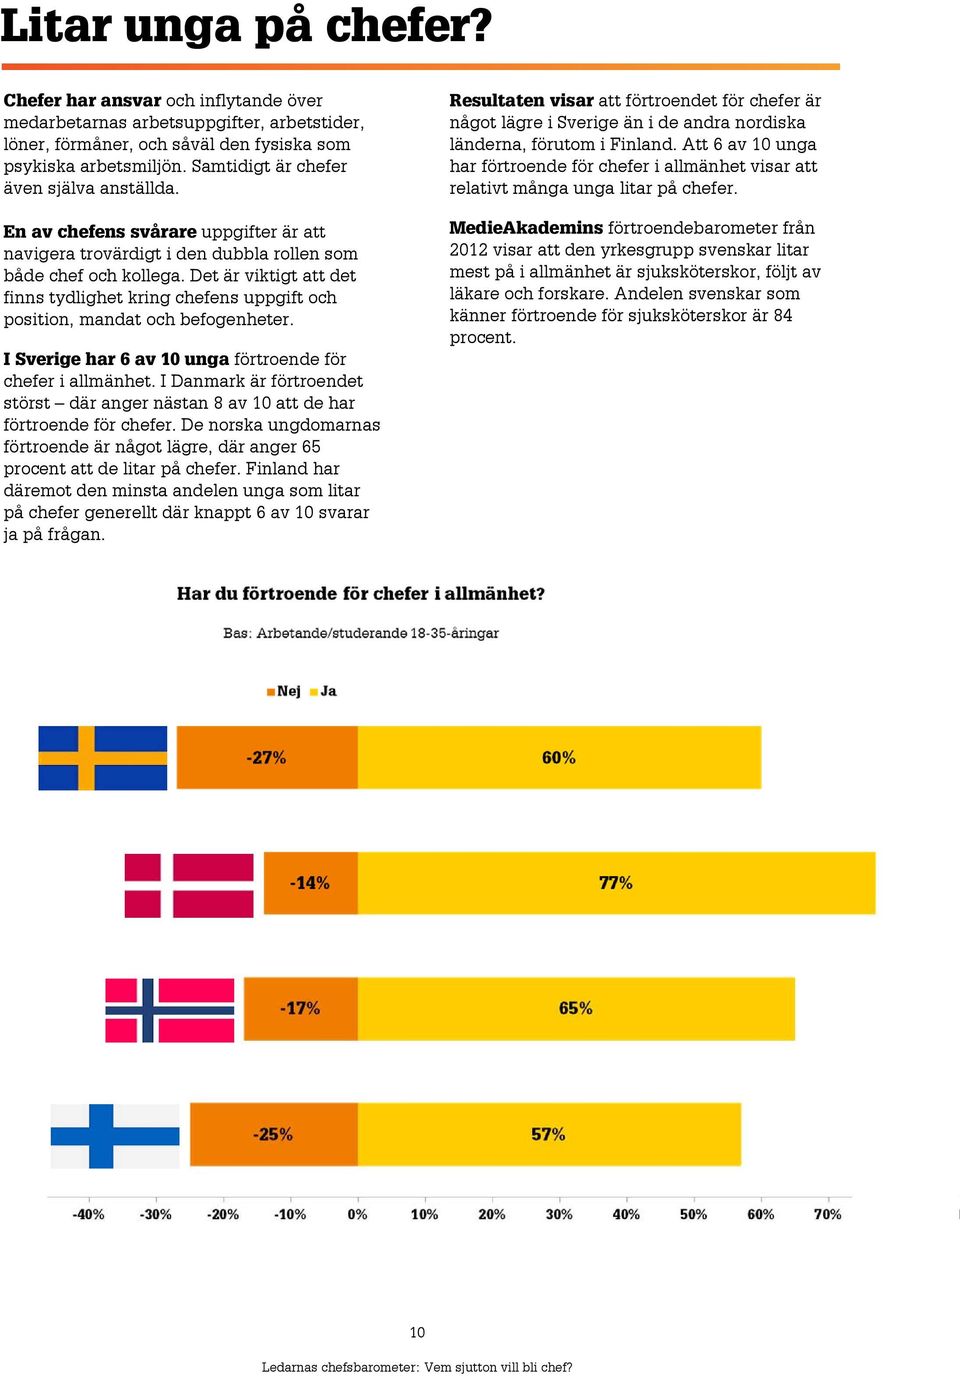 Det är viktigt att det finns tydlighet kring chefens uppgift och position, mandat och befogenheter. I Sverige har 6 av 10 unga förtroende för chefer i allmänhet.